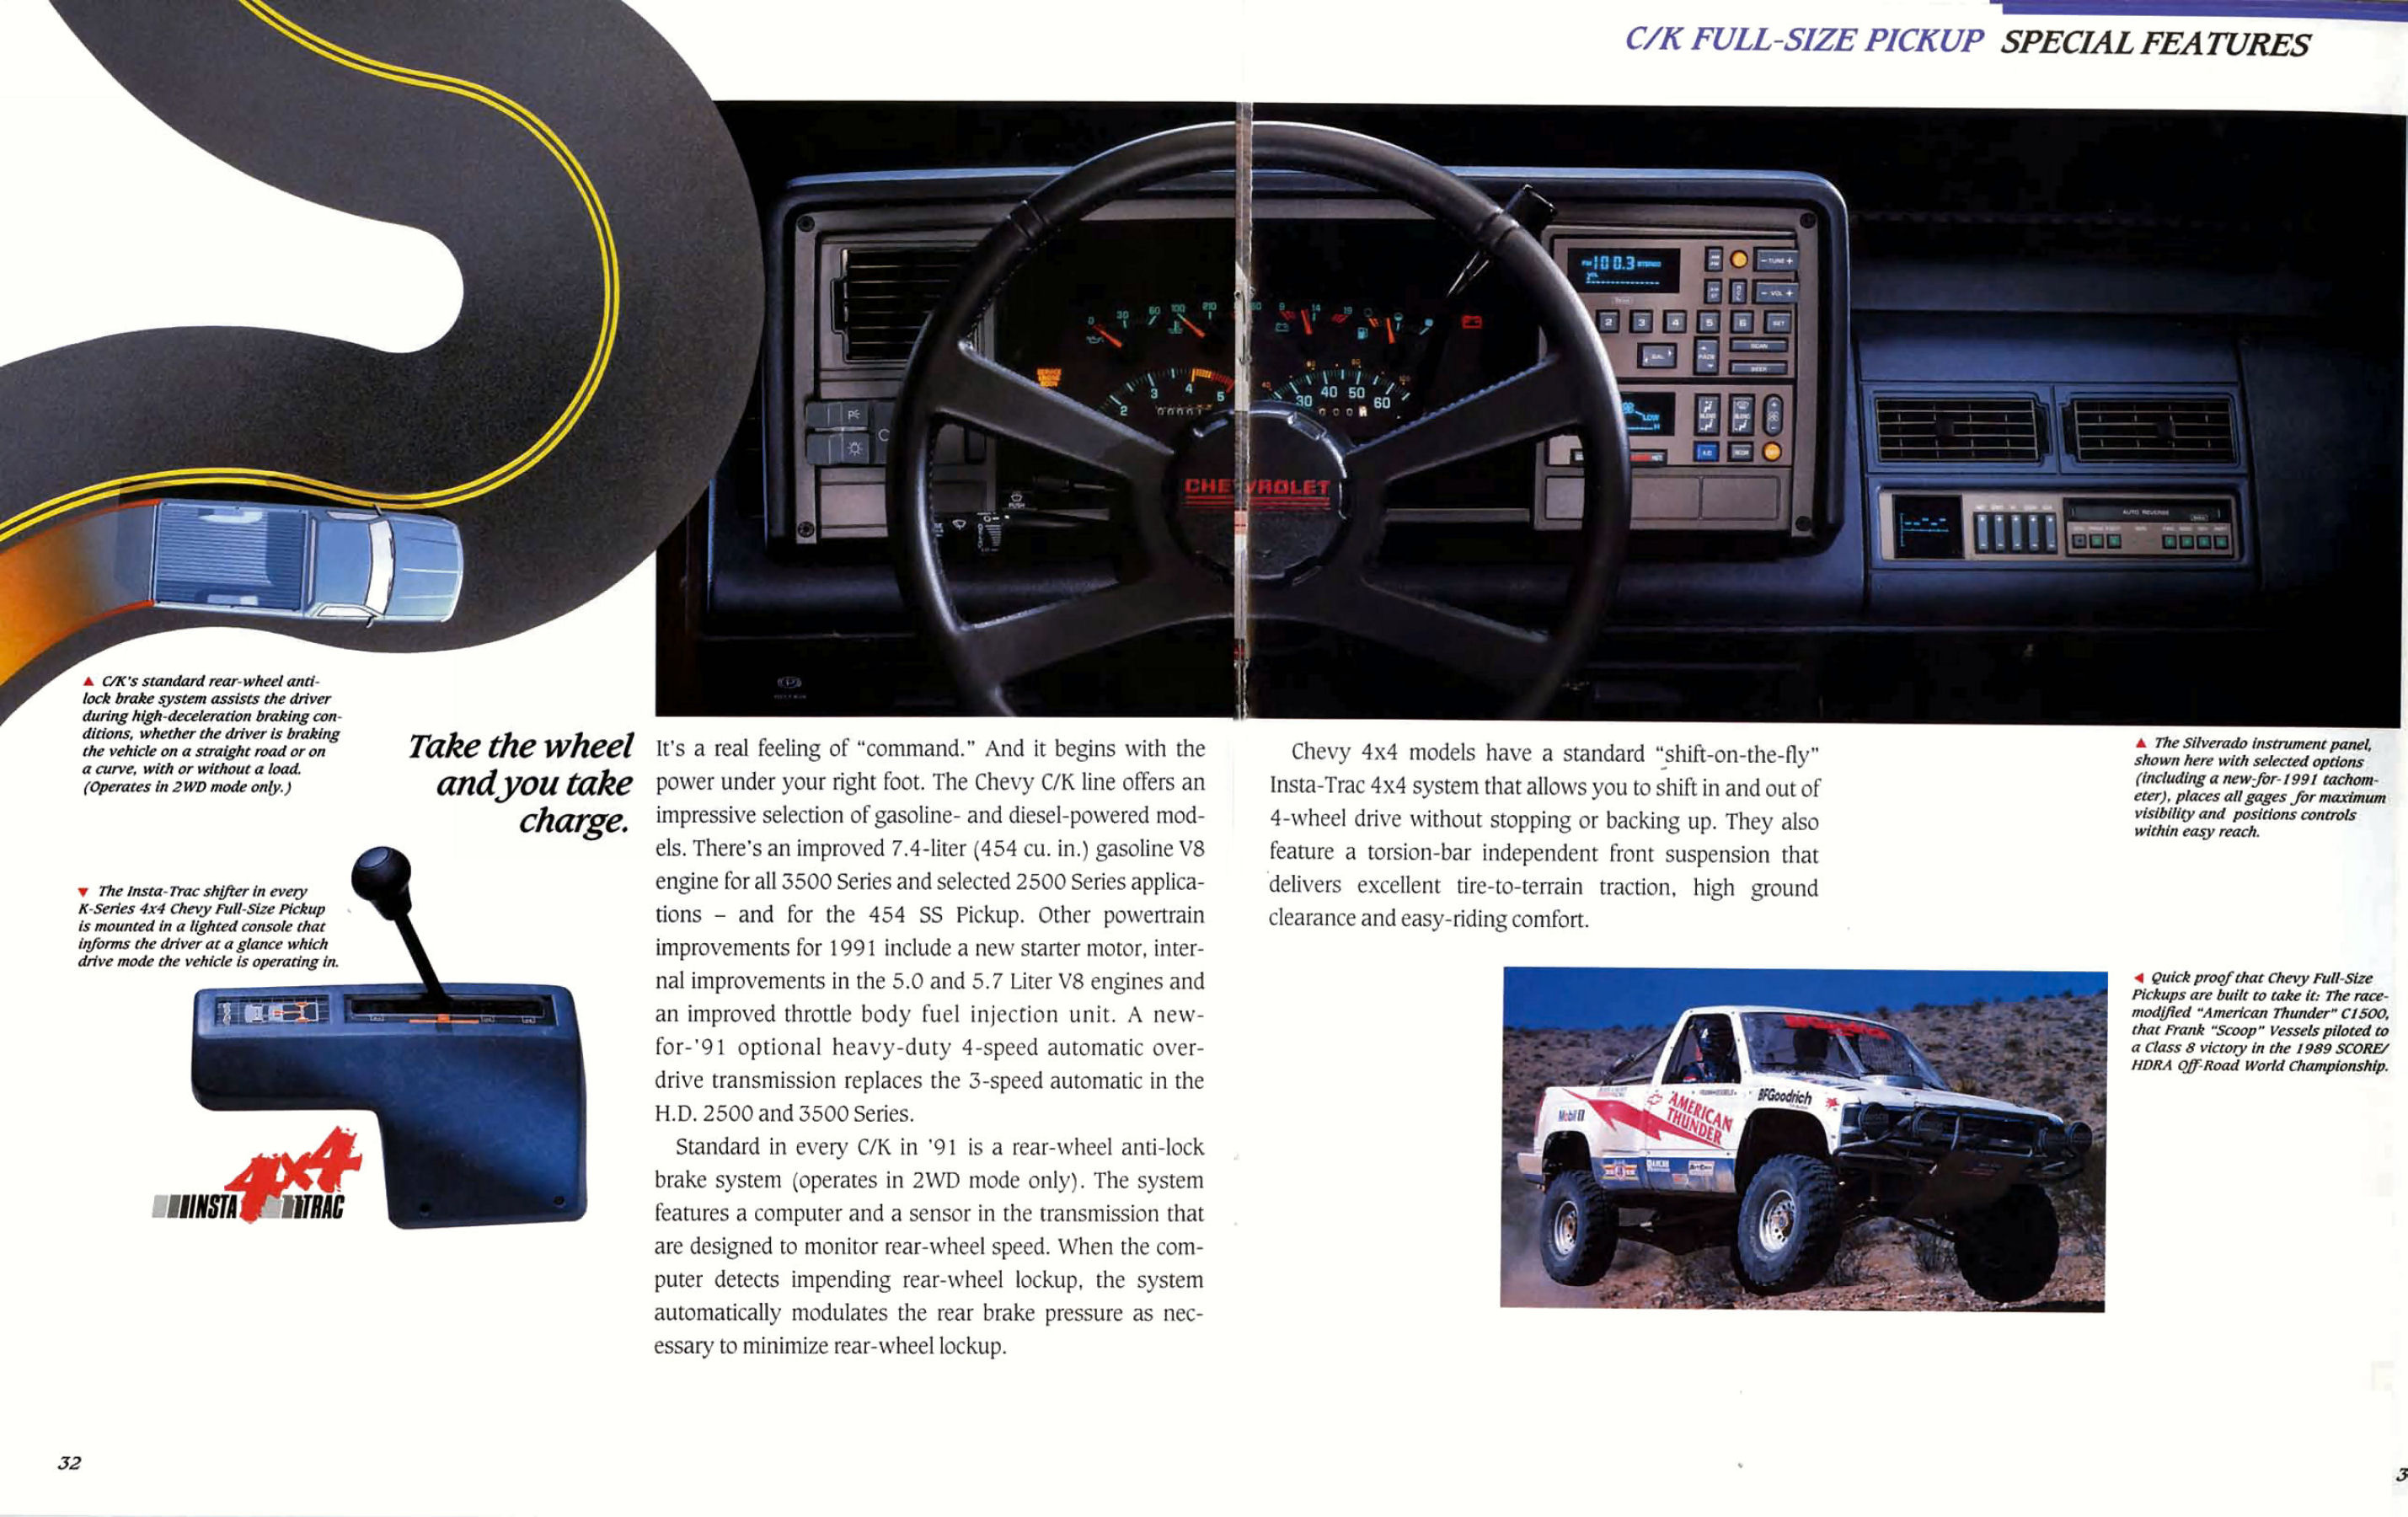 1991_Chevrolet_Pickups-32-33